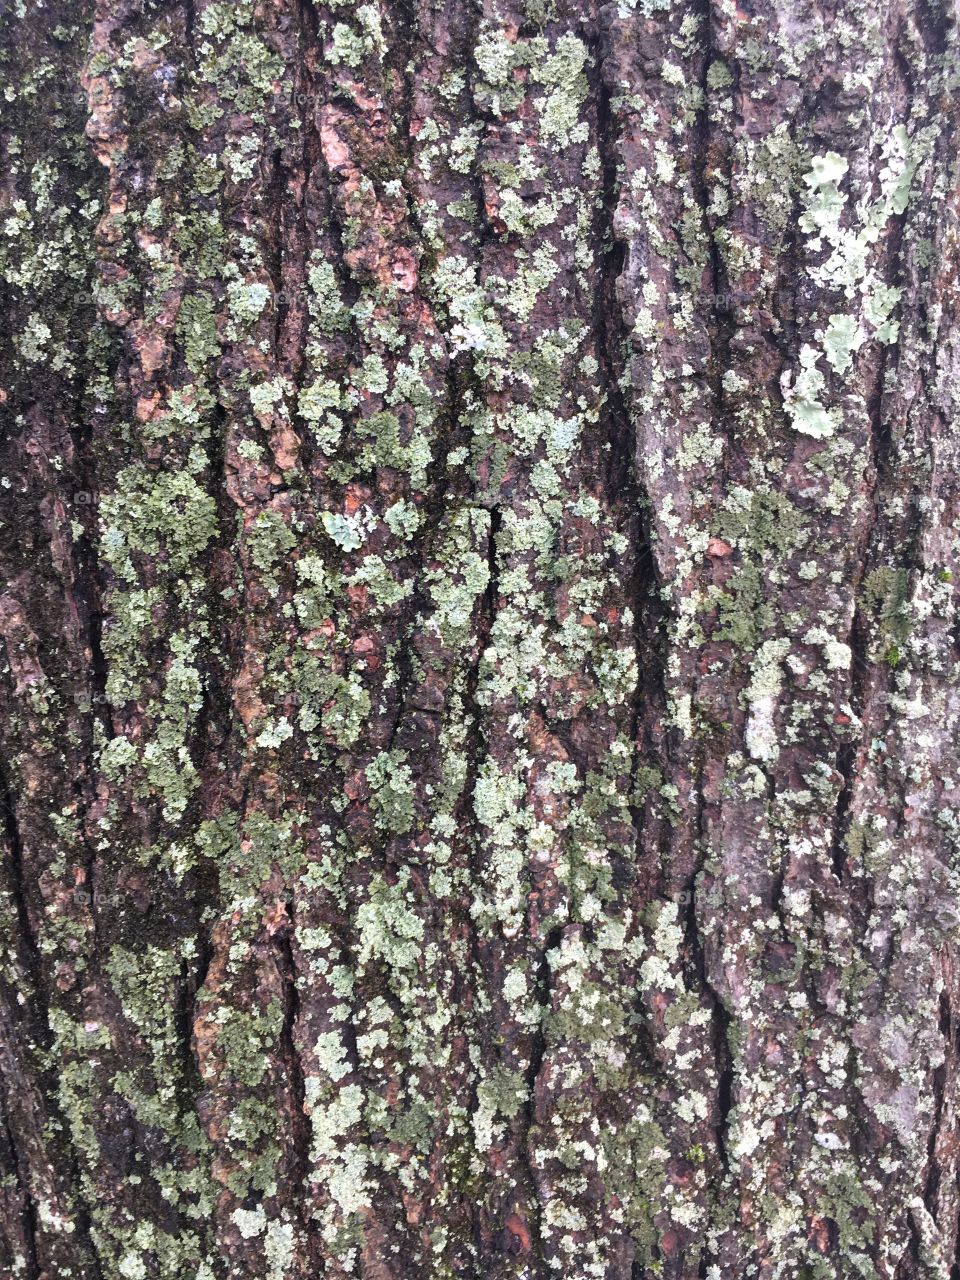 Bark with lichen